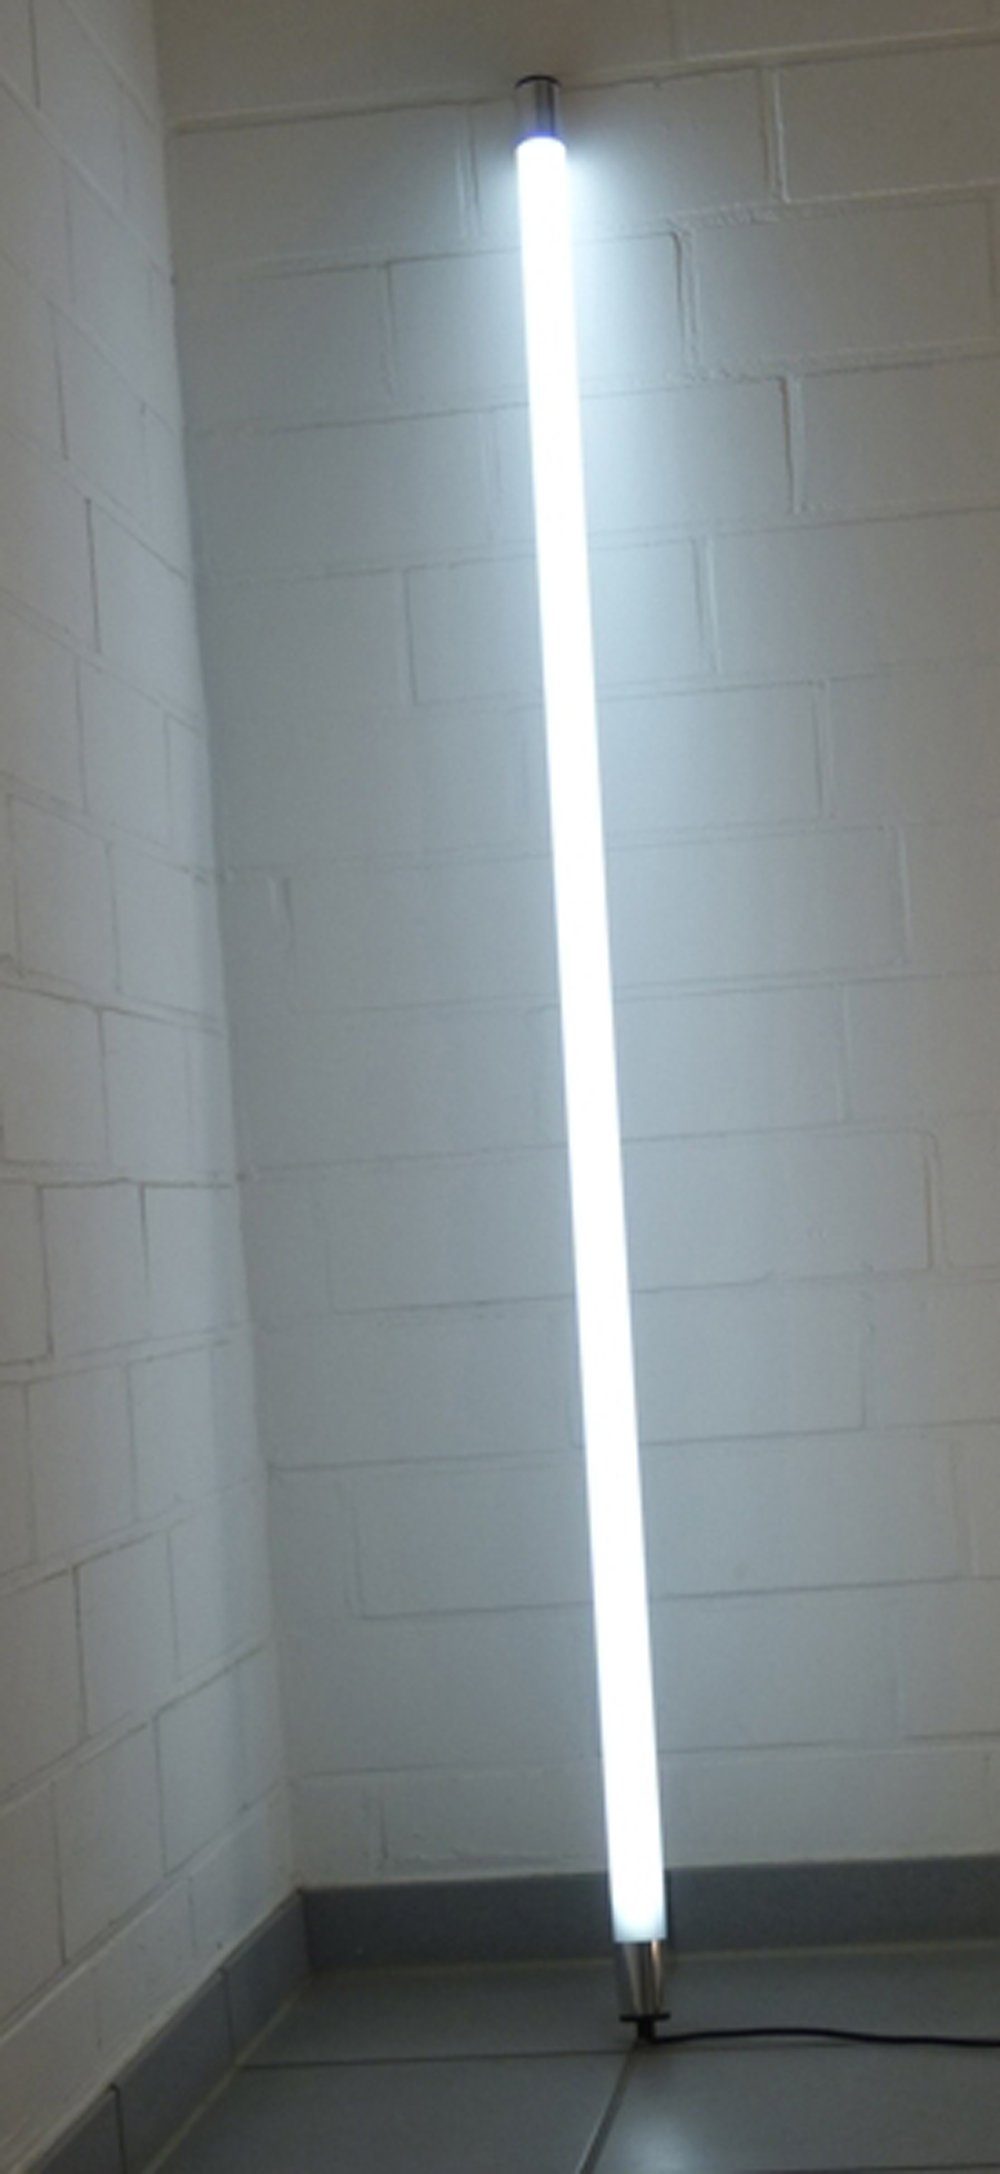 XENON LED Wandleuchte LED Leuchtstab Satiniert 1,23m Länge 2000 Lumen IP44 Außen Kalt Weiß, LED Röhre T8, Xenon Kalt Weiß | Wandleuchten